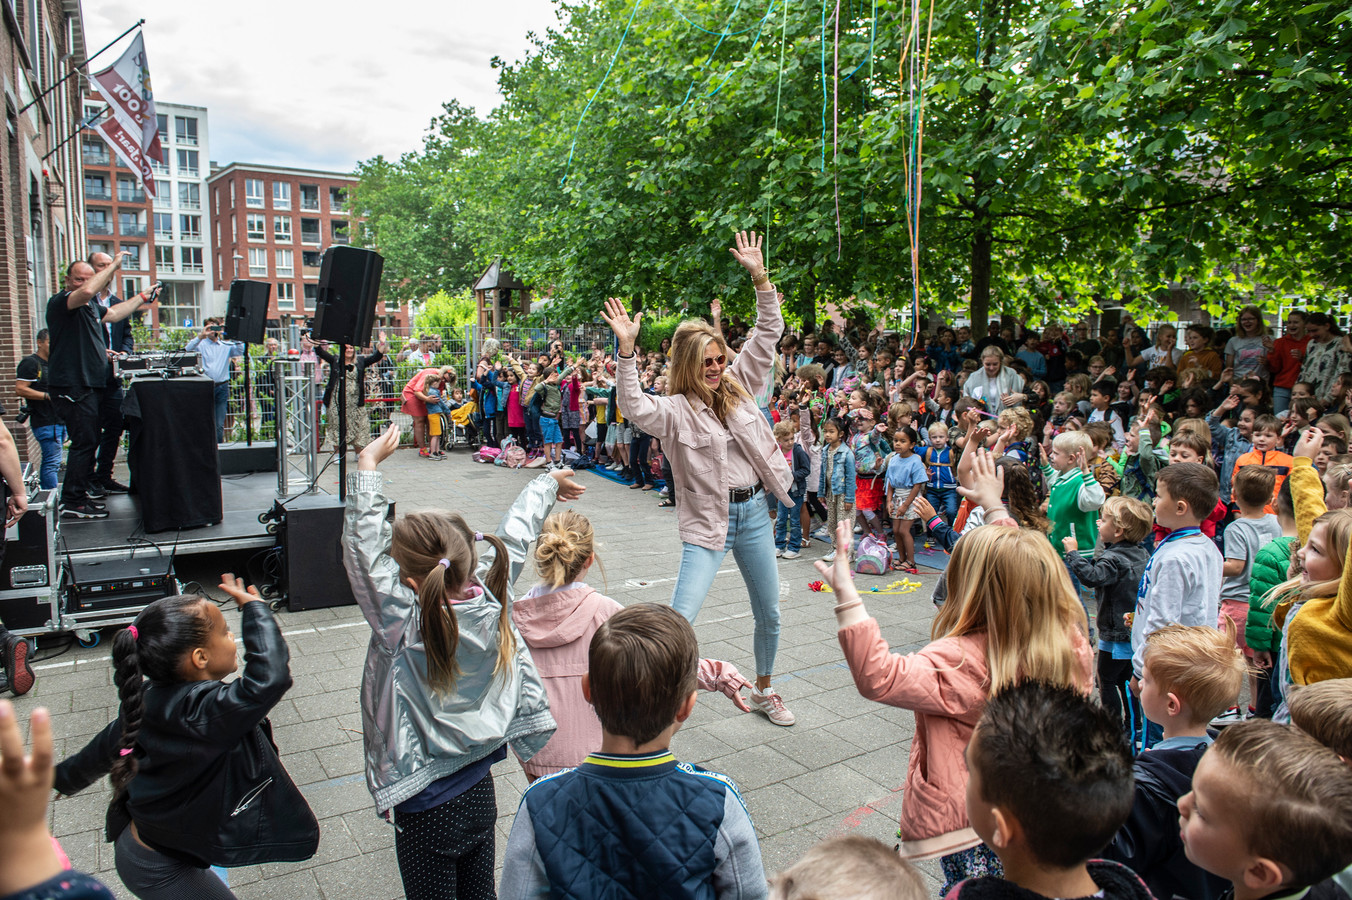 Muziekcoach Jaqueline Heilema van kbs St. Joseph in Breda enthousiasmeert zwaaiend met de handen in de lucht de kinderen ook mee te dansen op de muziek tijdens de opening van de DJ-Dagen op de basisschool.